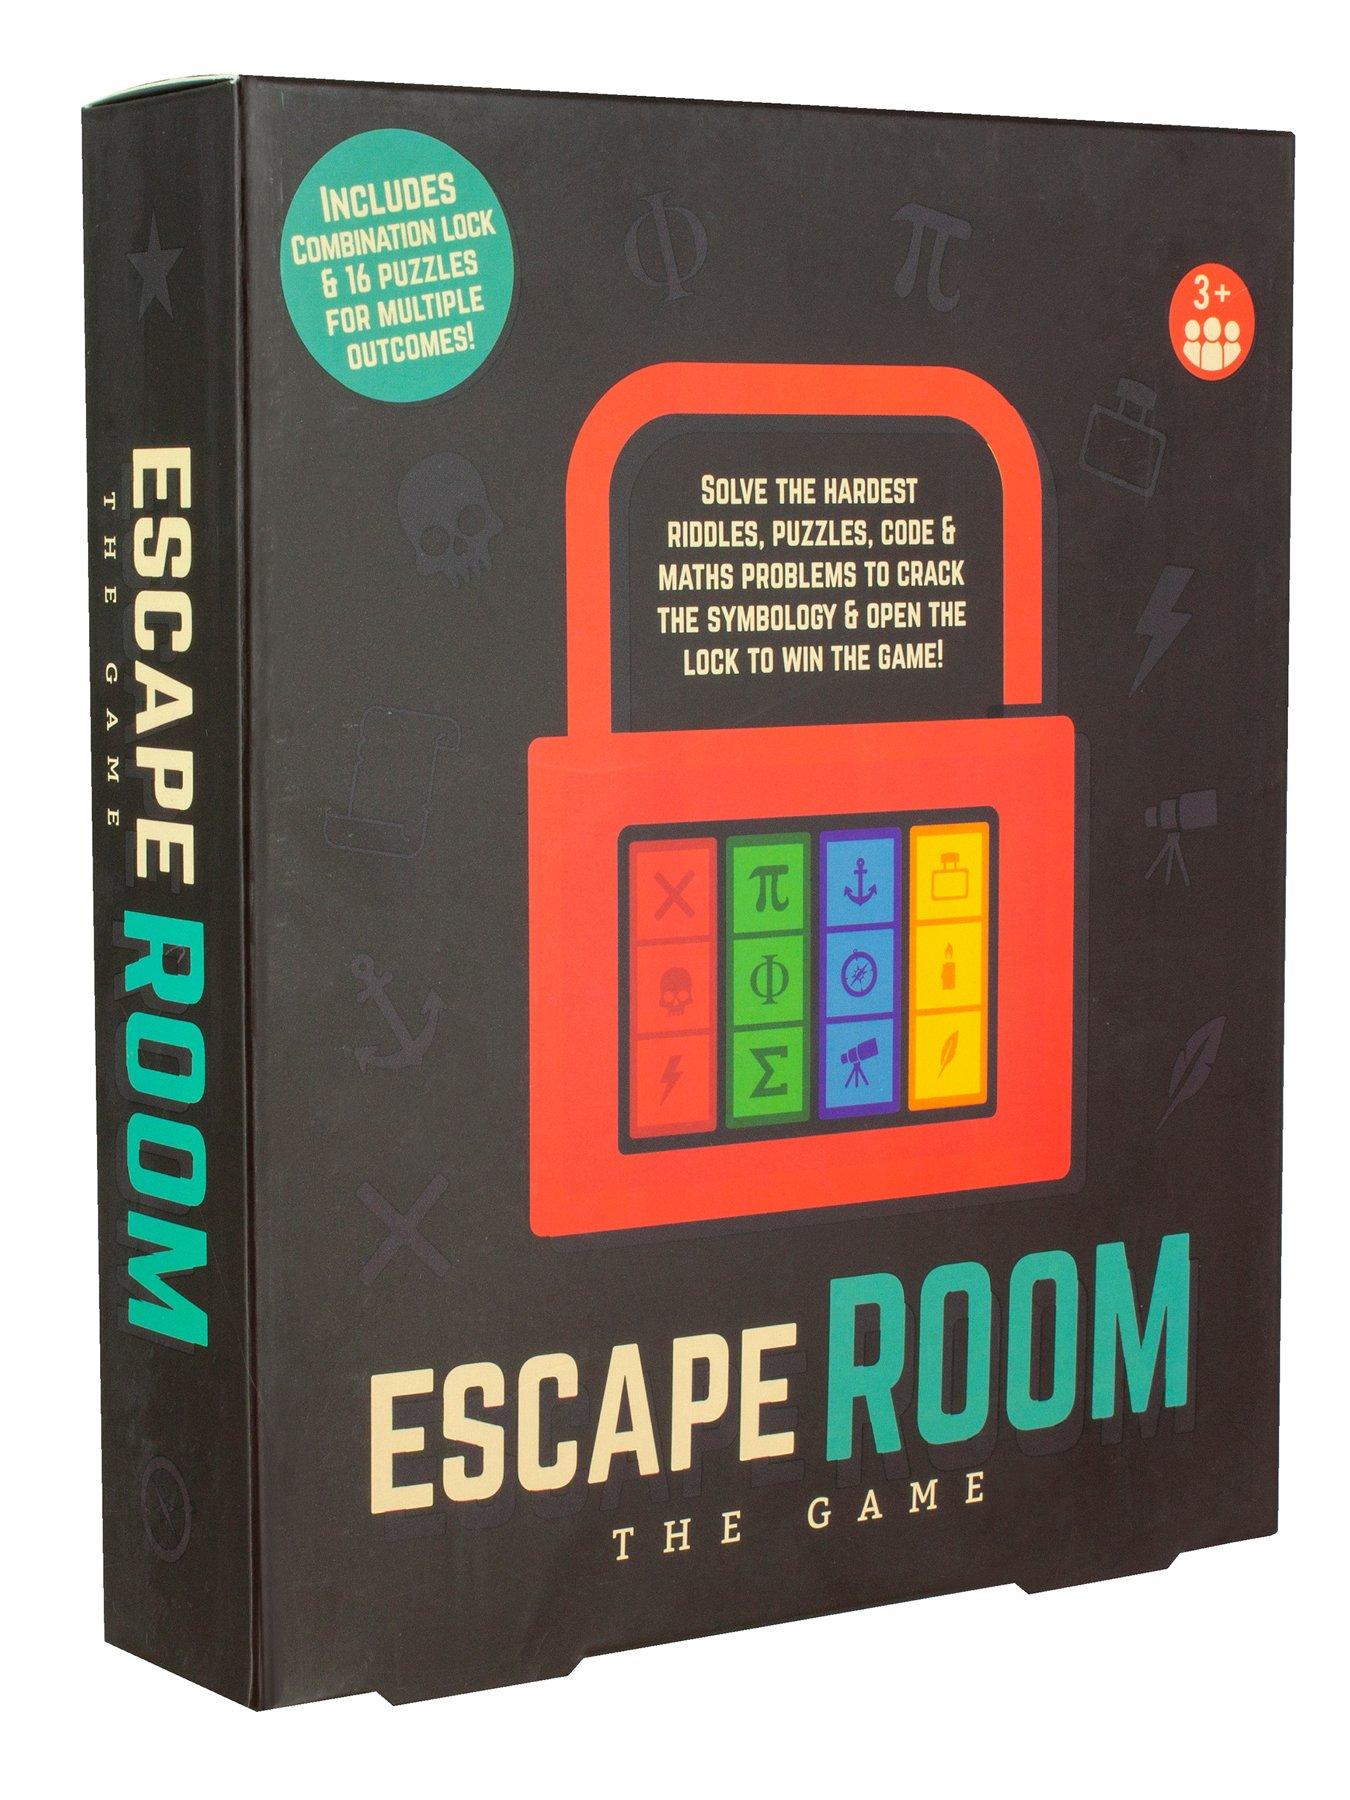 Escape Room Game - escape room roblox switch code